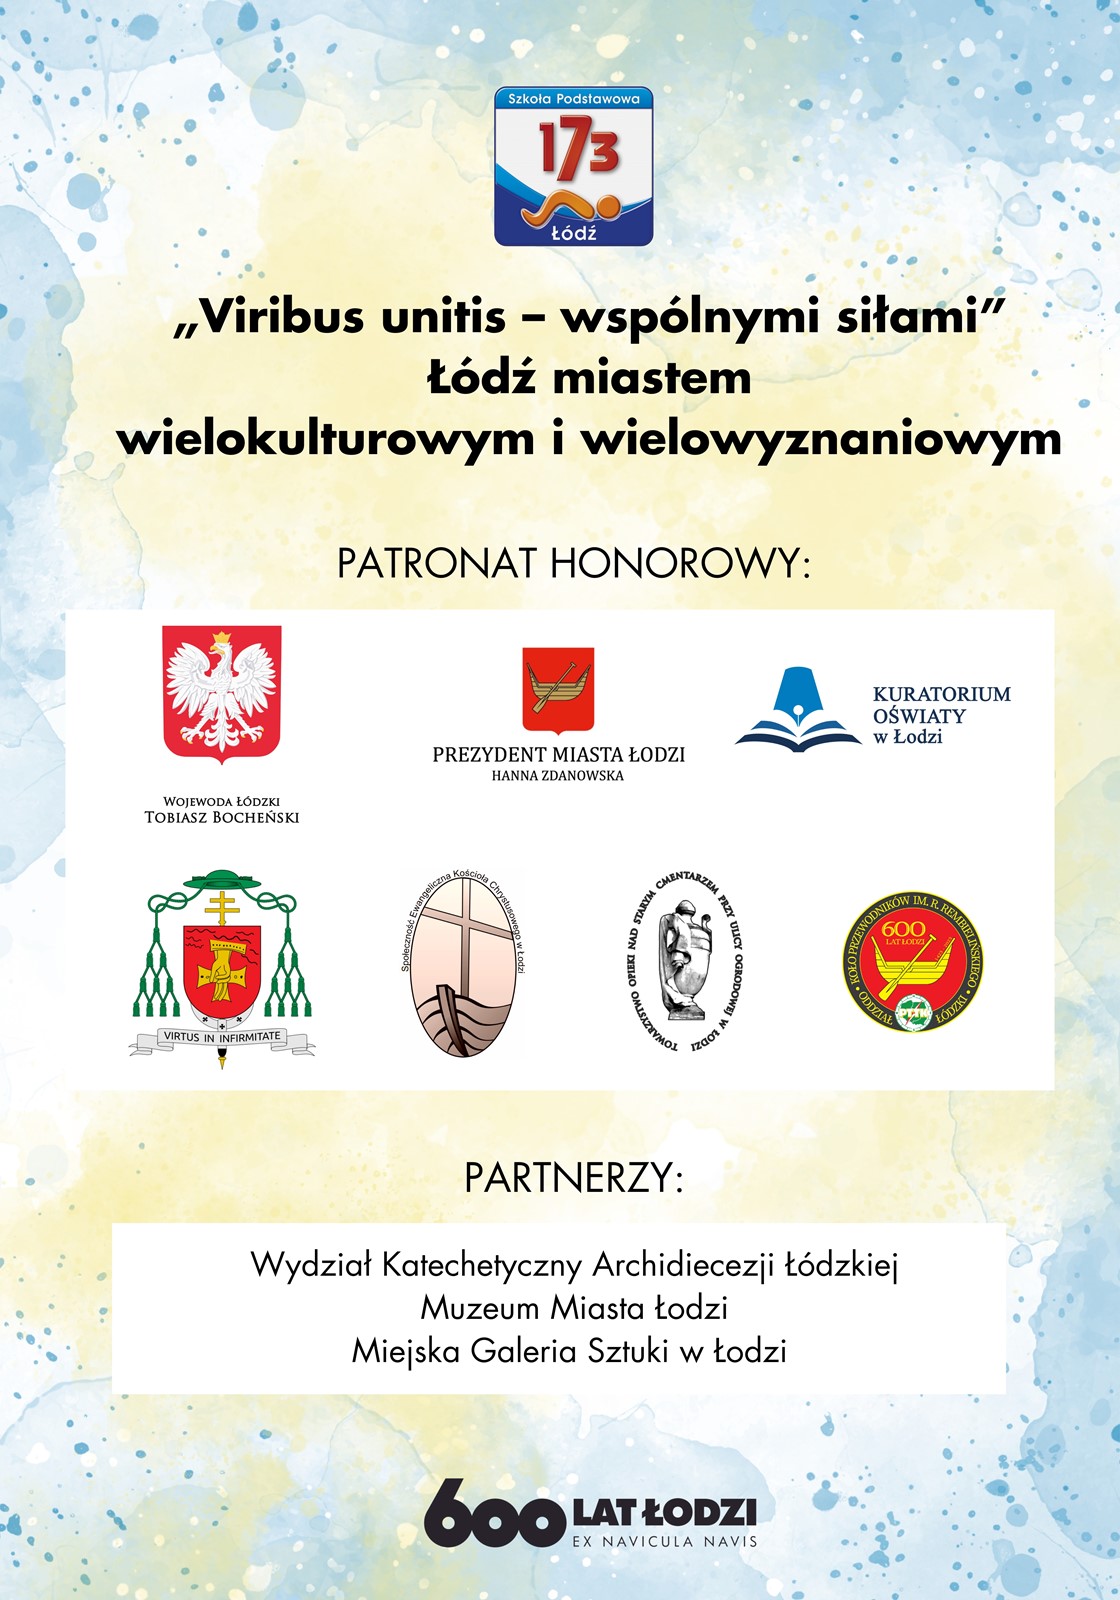 Na plakacie znajduje się logo szkoły oraz napis "Viribus unitis - wspólnymi siłami" Łódź miastem wielokulturowym i wielowyznaniowym. Znajdują się również loga instytucji będących patronami honorowymi projektu